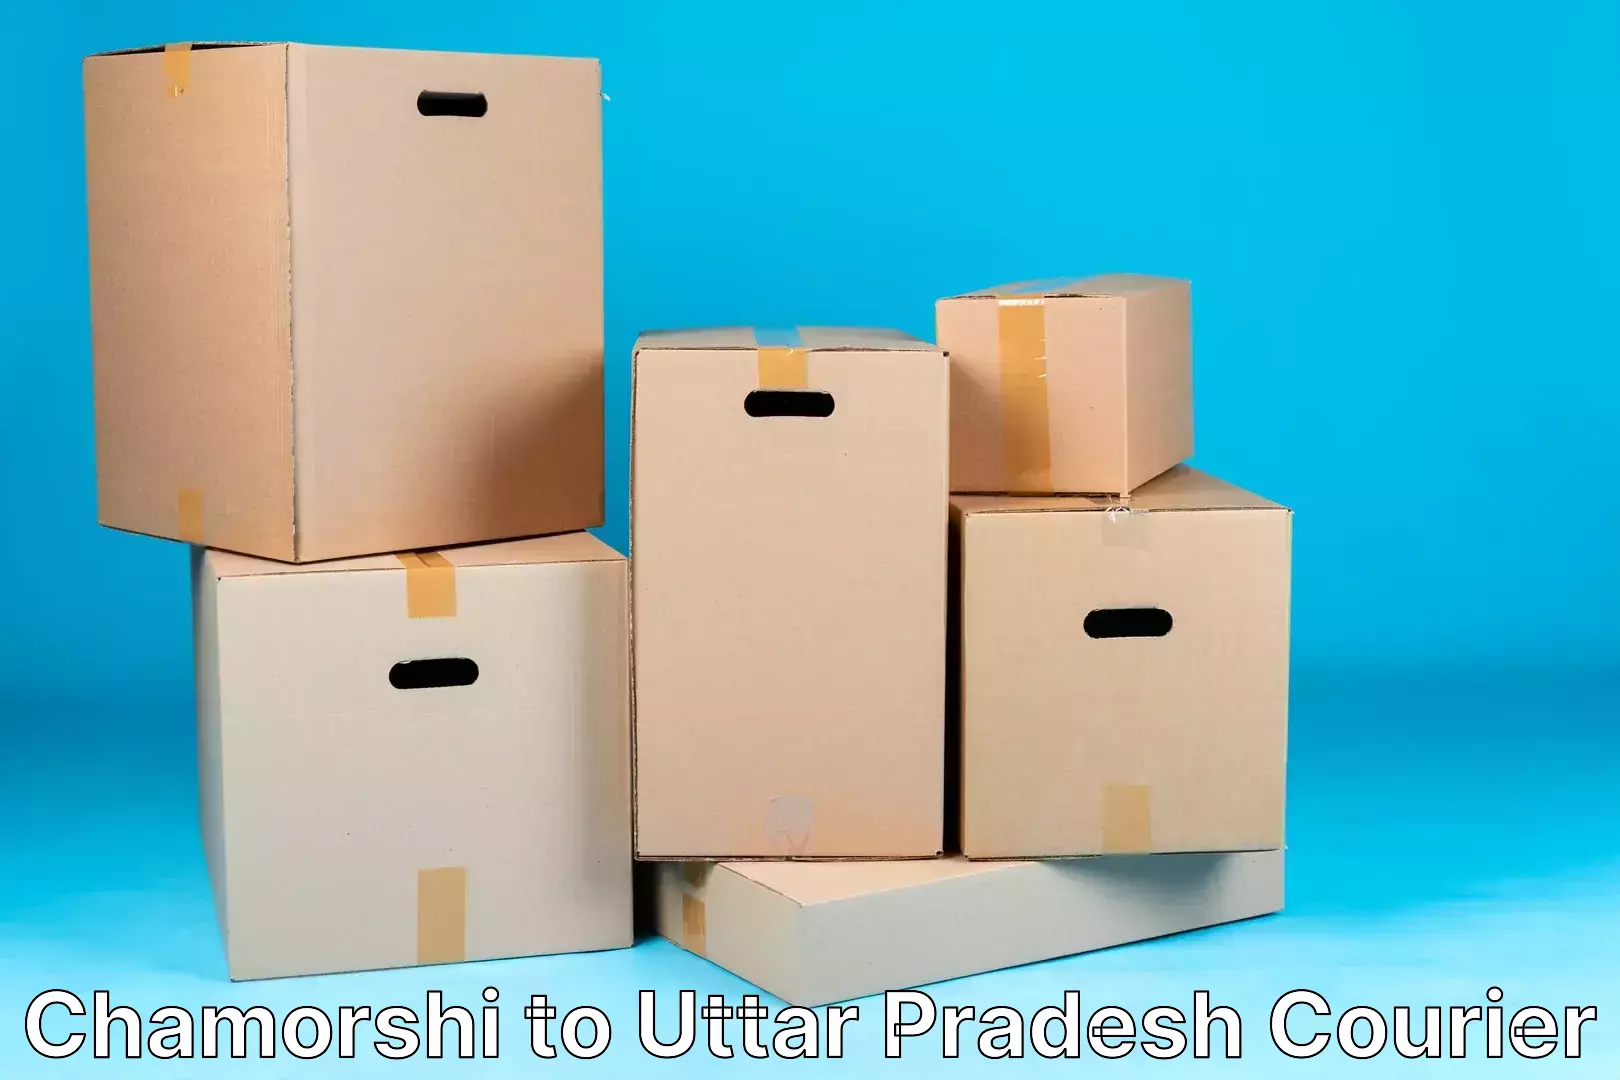 Luggage delivery app Chamorshi to Uttar Pradesh